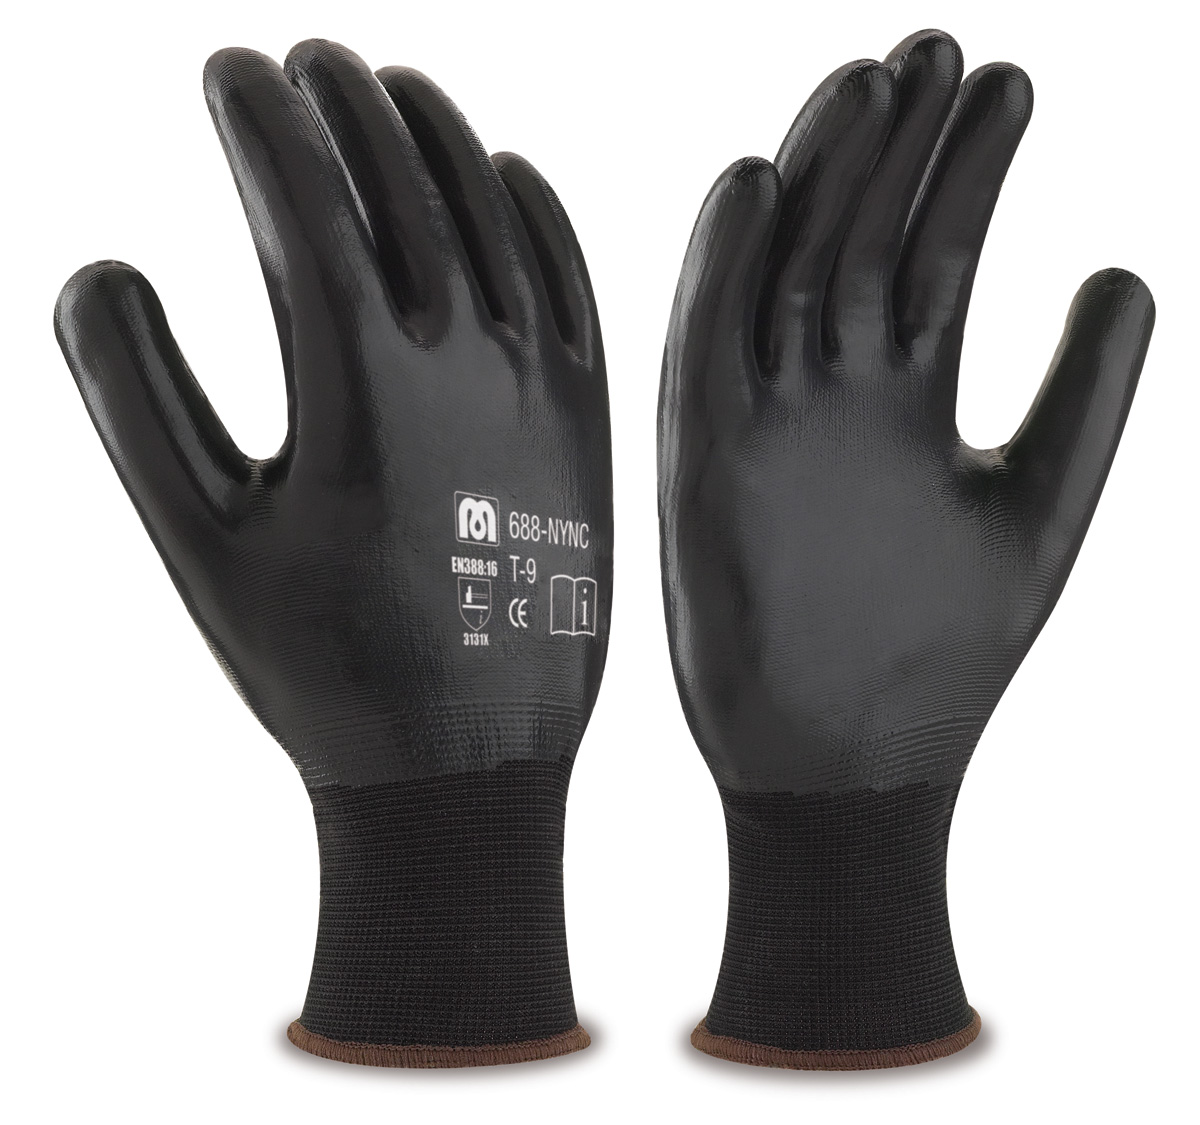 688-NYNC Guantes de Trabajo Nylon Guante de poliéster color negro con recubrimiento de nitrilo en color negro en palma, dedos y dorso.